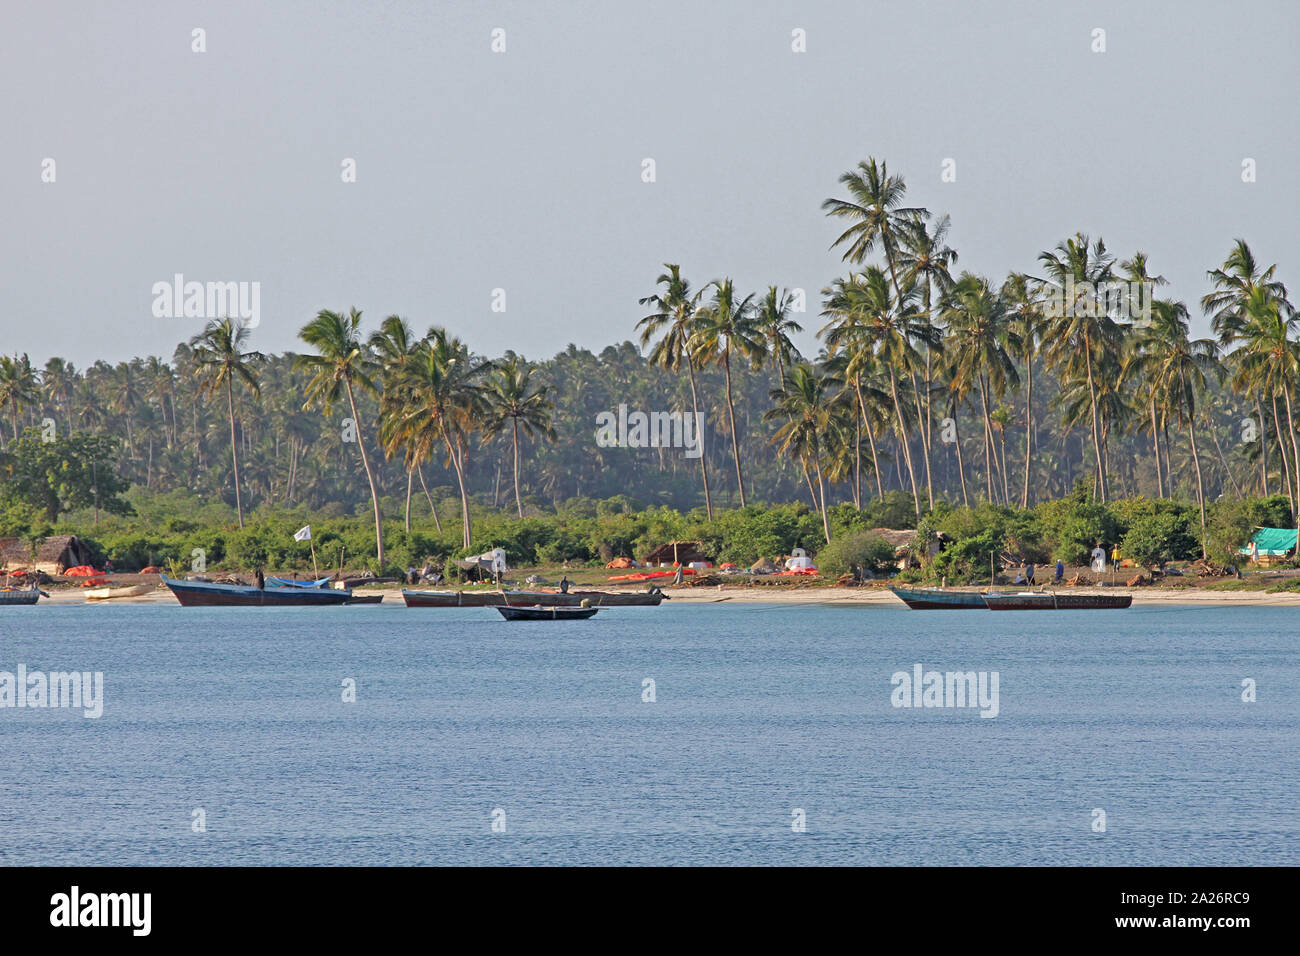 Villaggio di pescatori sulla spiaggia con barche da pesca e palme lungo la costa orientale di Zanzibar, isola di Unguja, Tanzania. Foto Stock